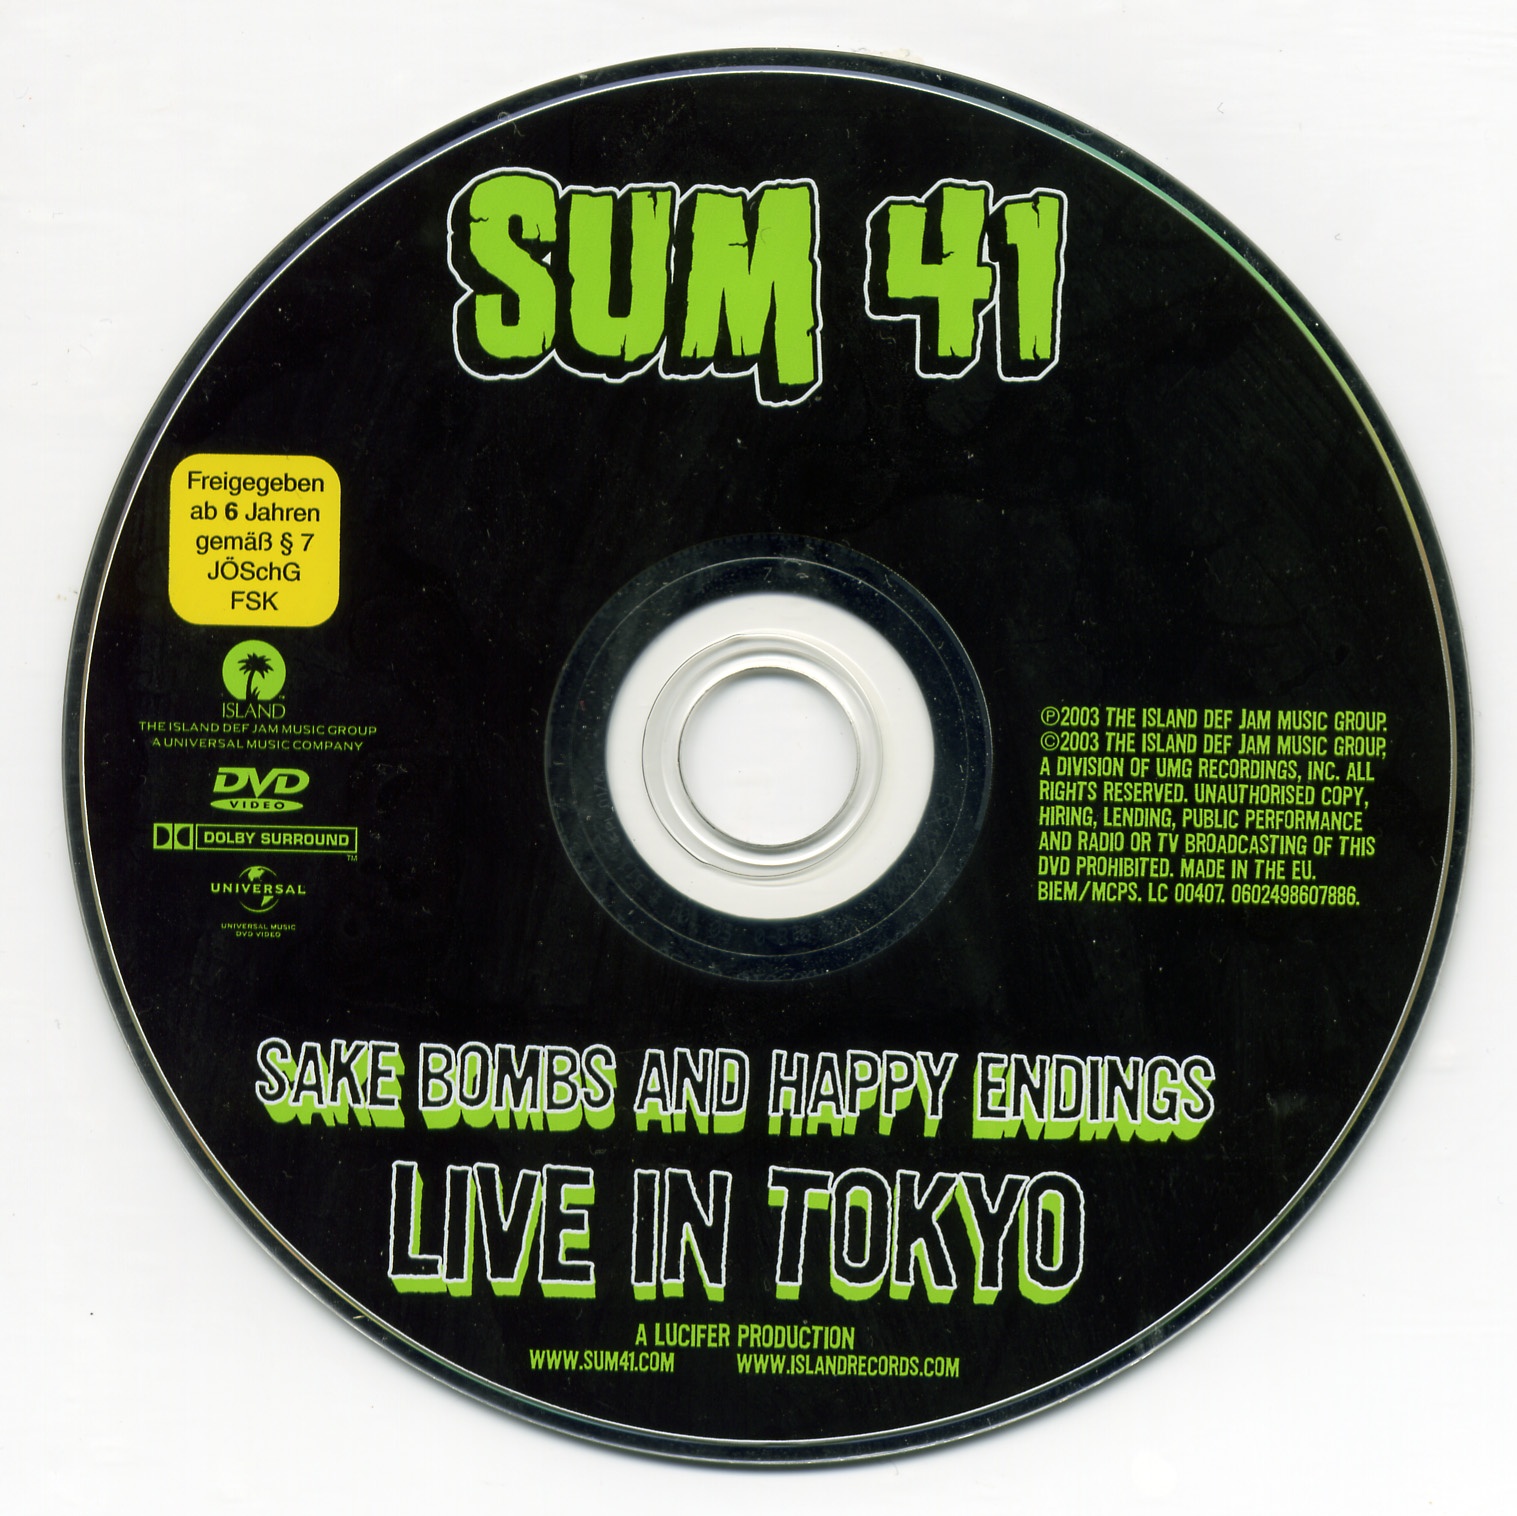 Sum 41 - Sake bombs and happy endings